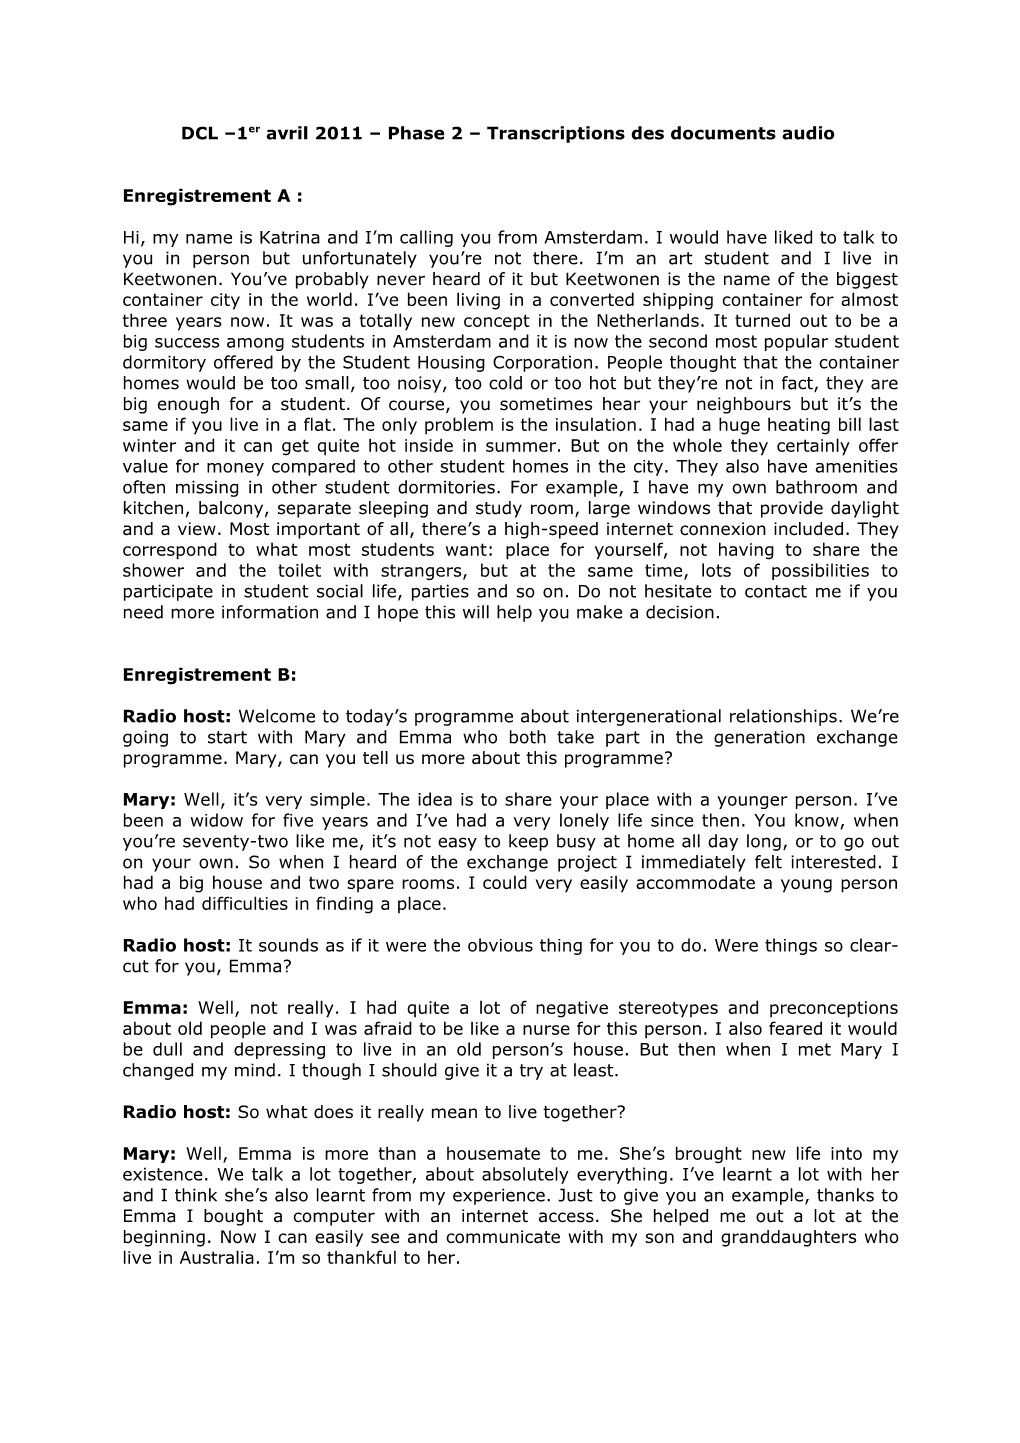 DCL 1Er Avril 2011 Transcriptions Des Documents Audio Phase 2